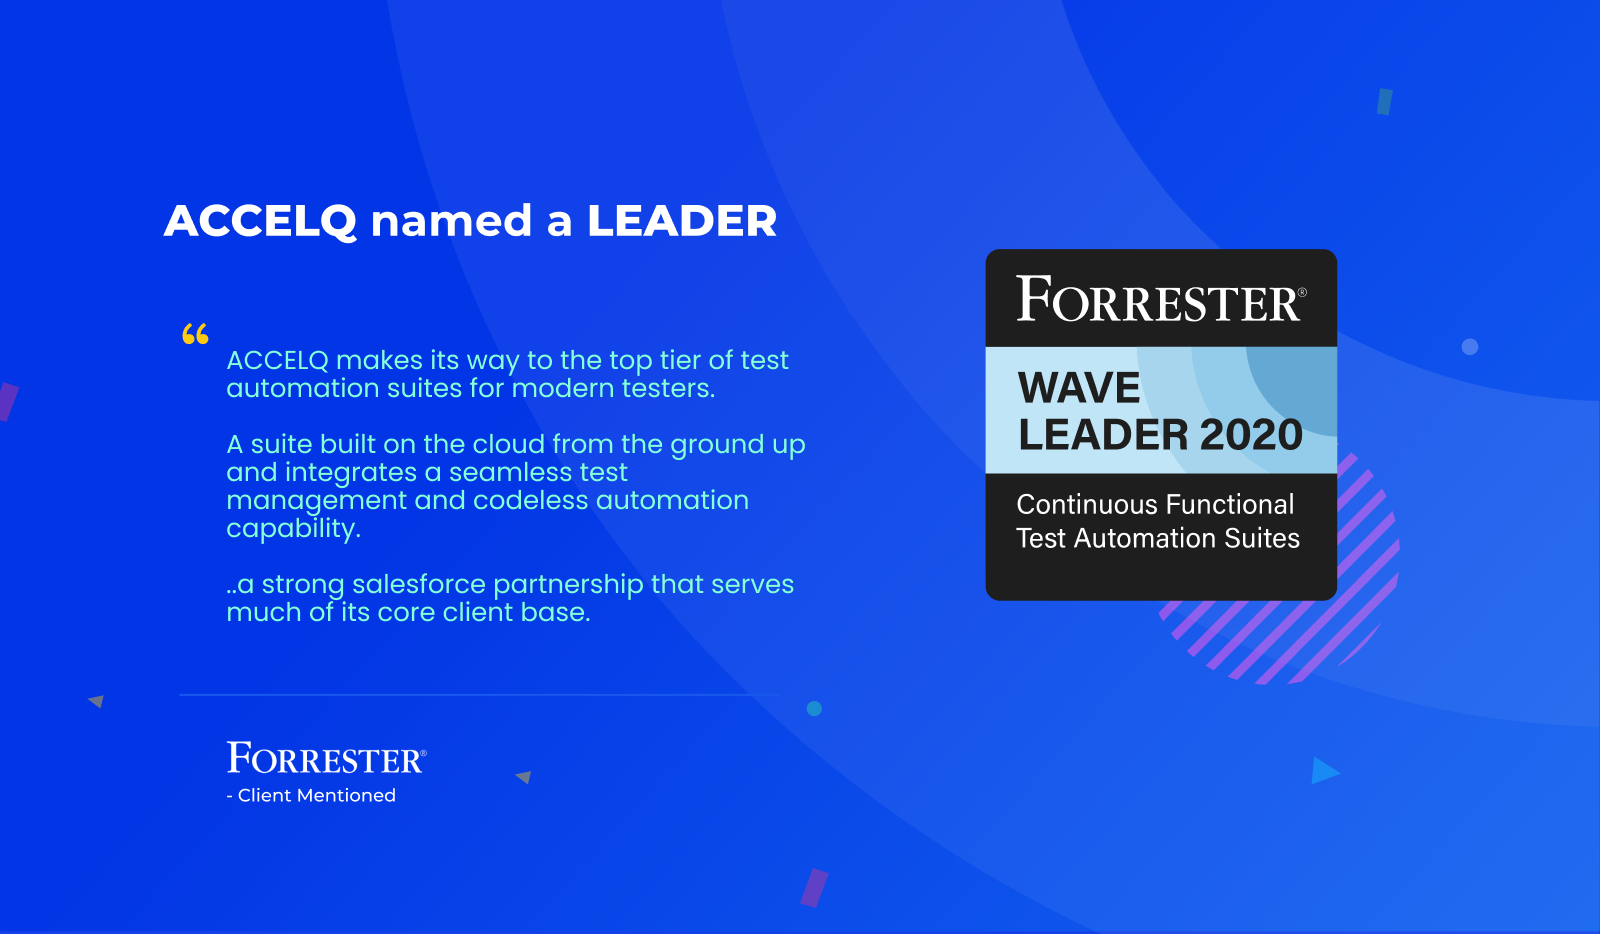 ACCELQ named a Leader - Forrester Wave Leader